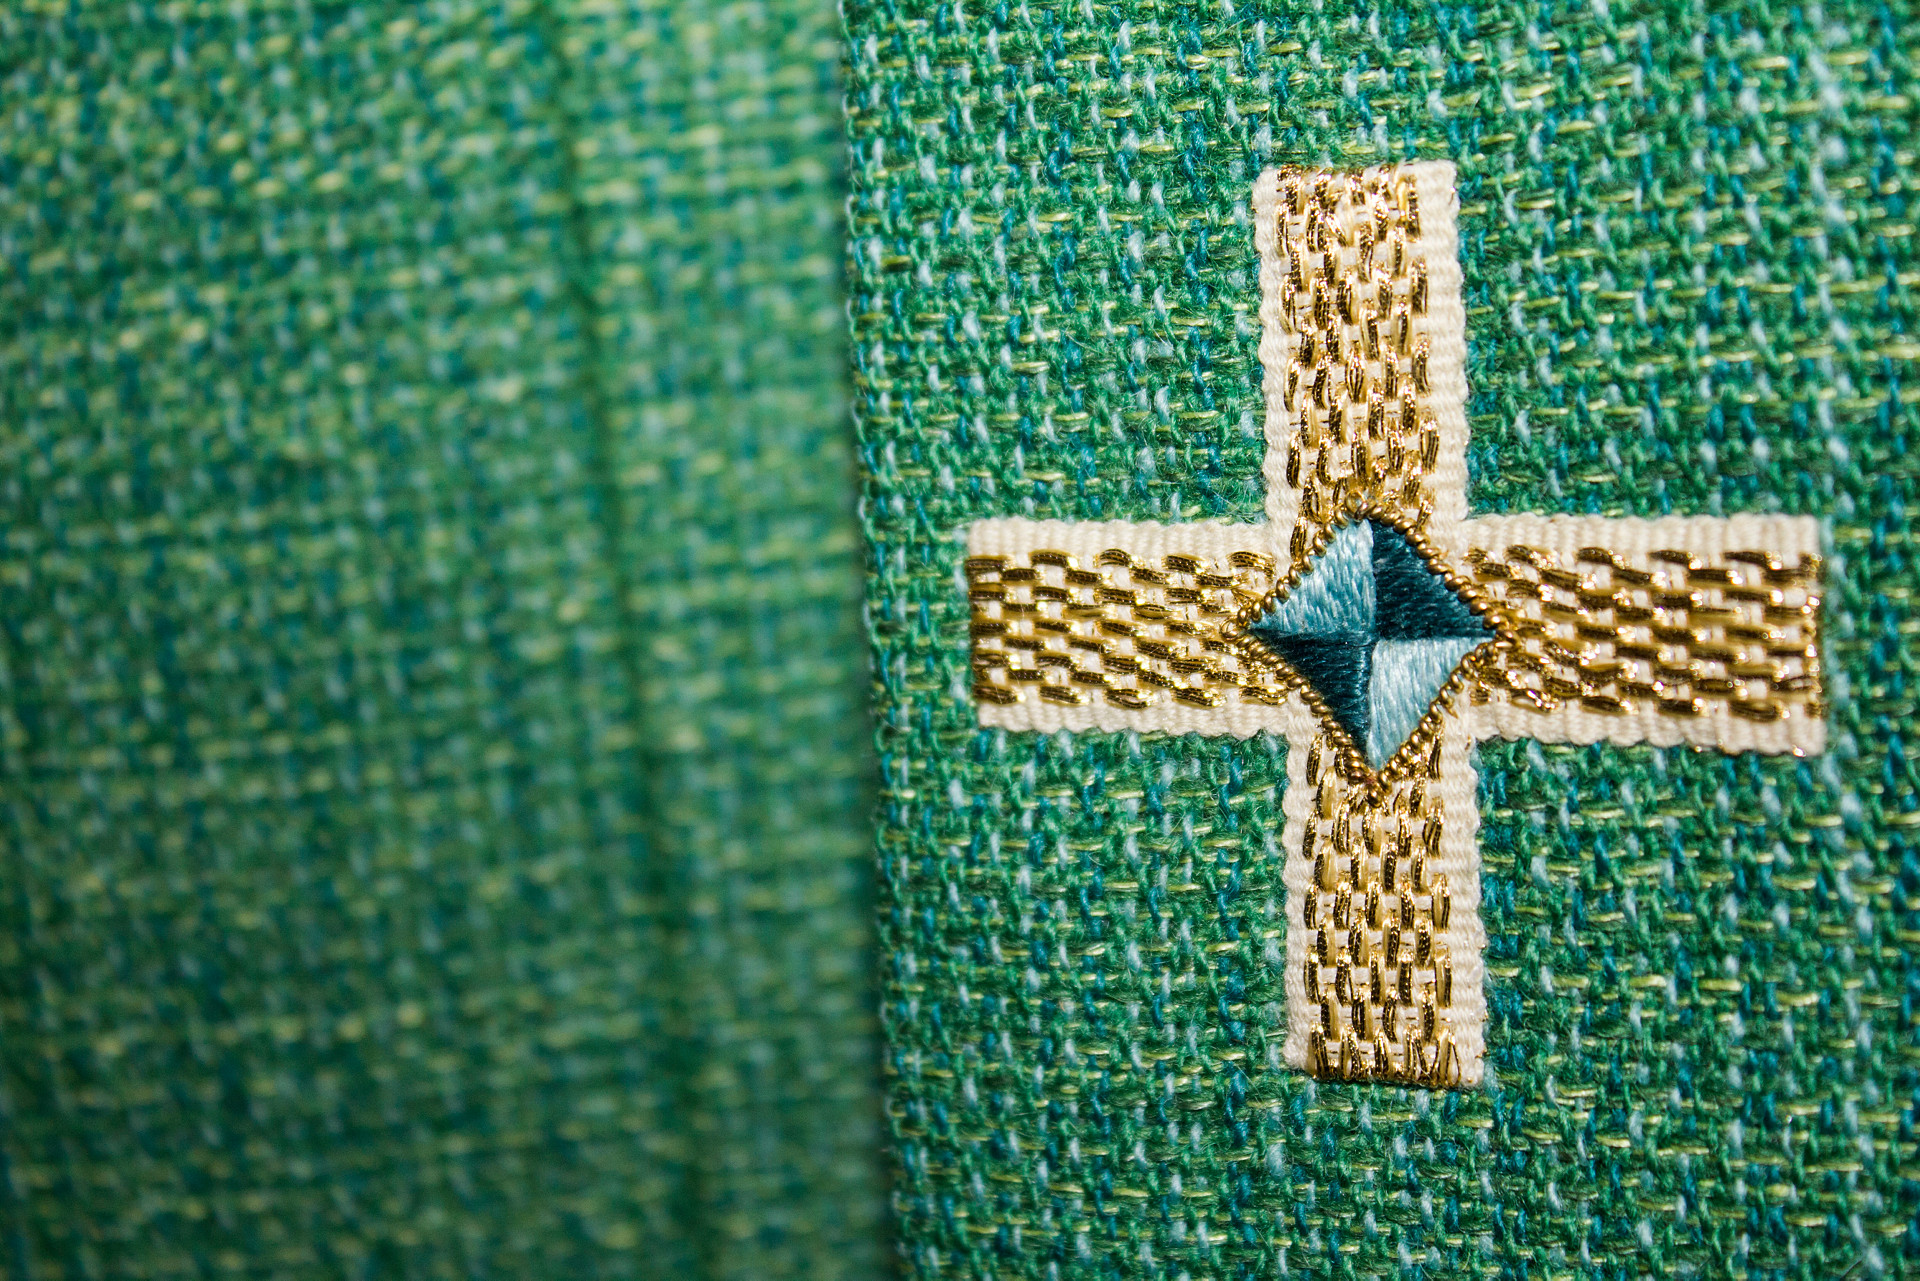 Närbild av kors på grönt tyg.